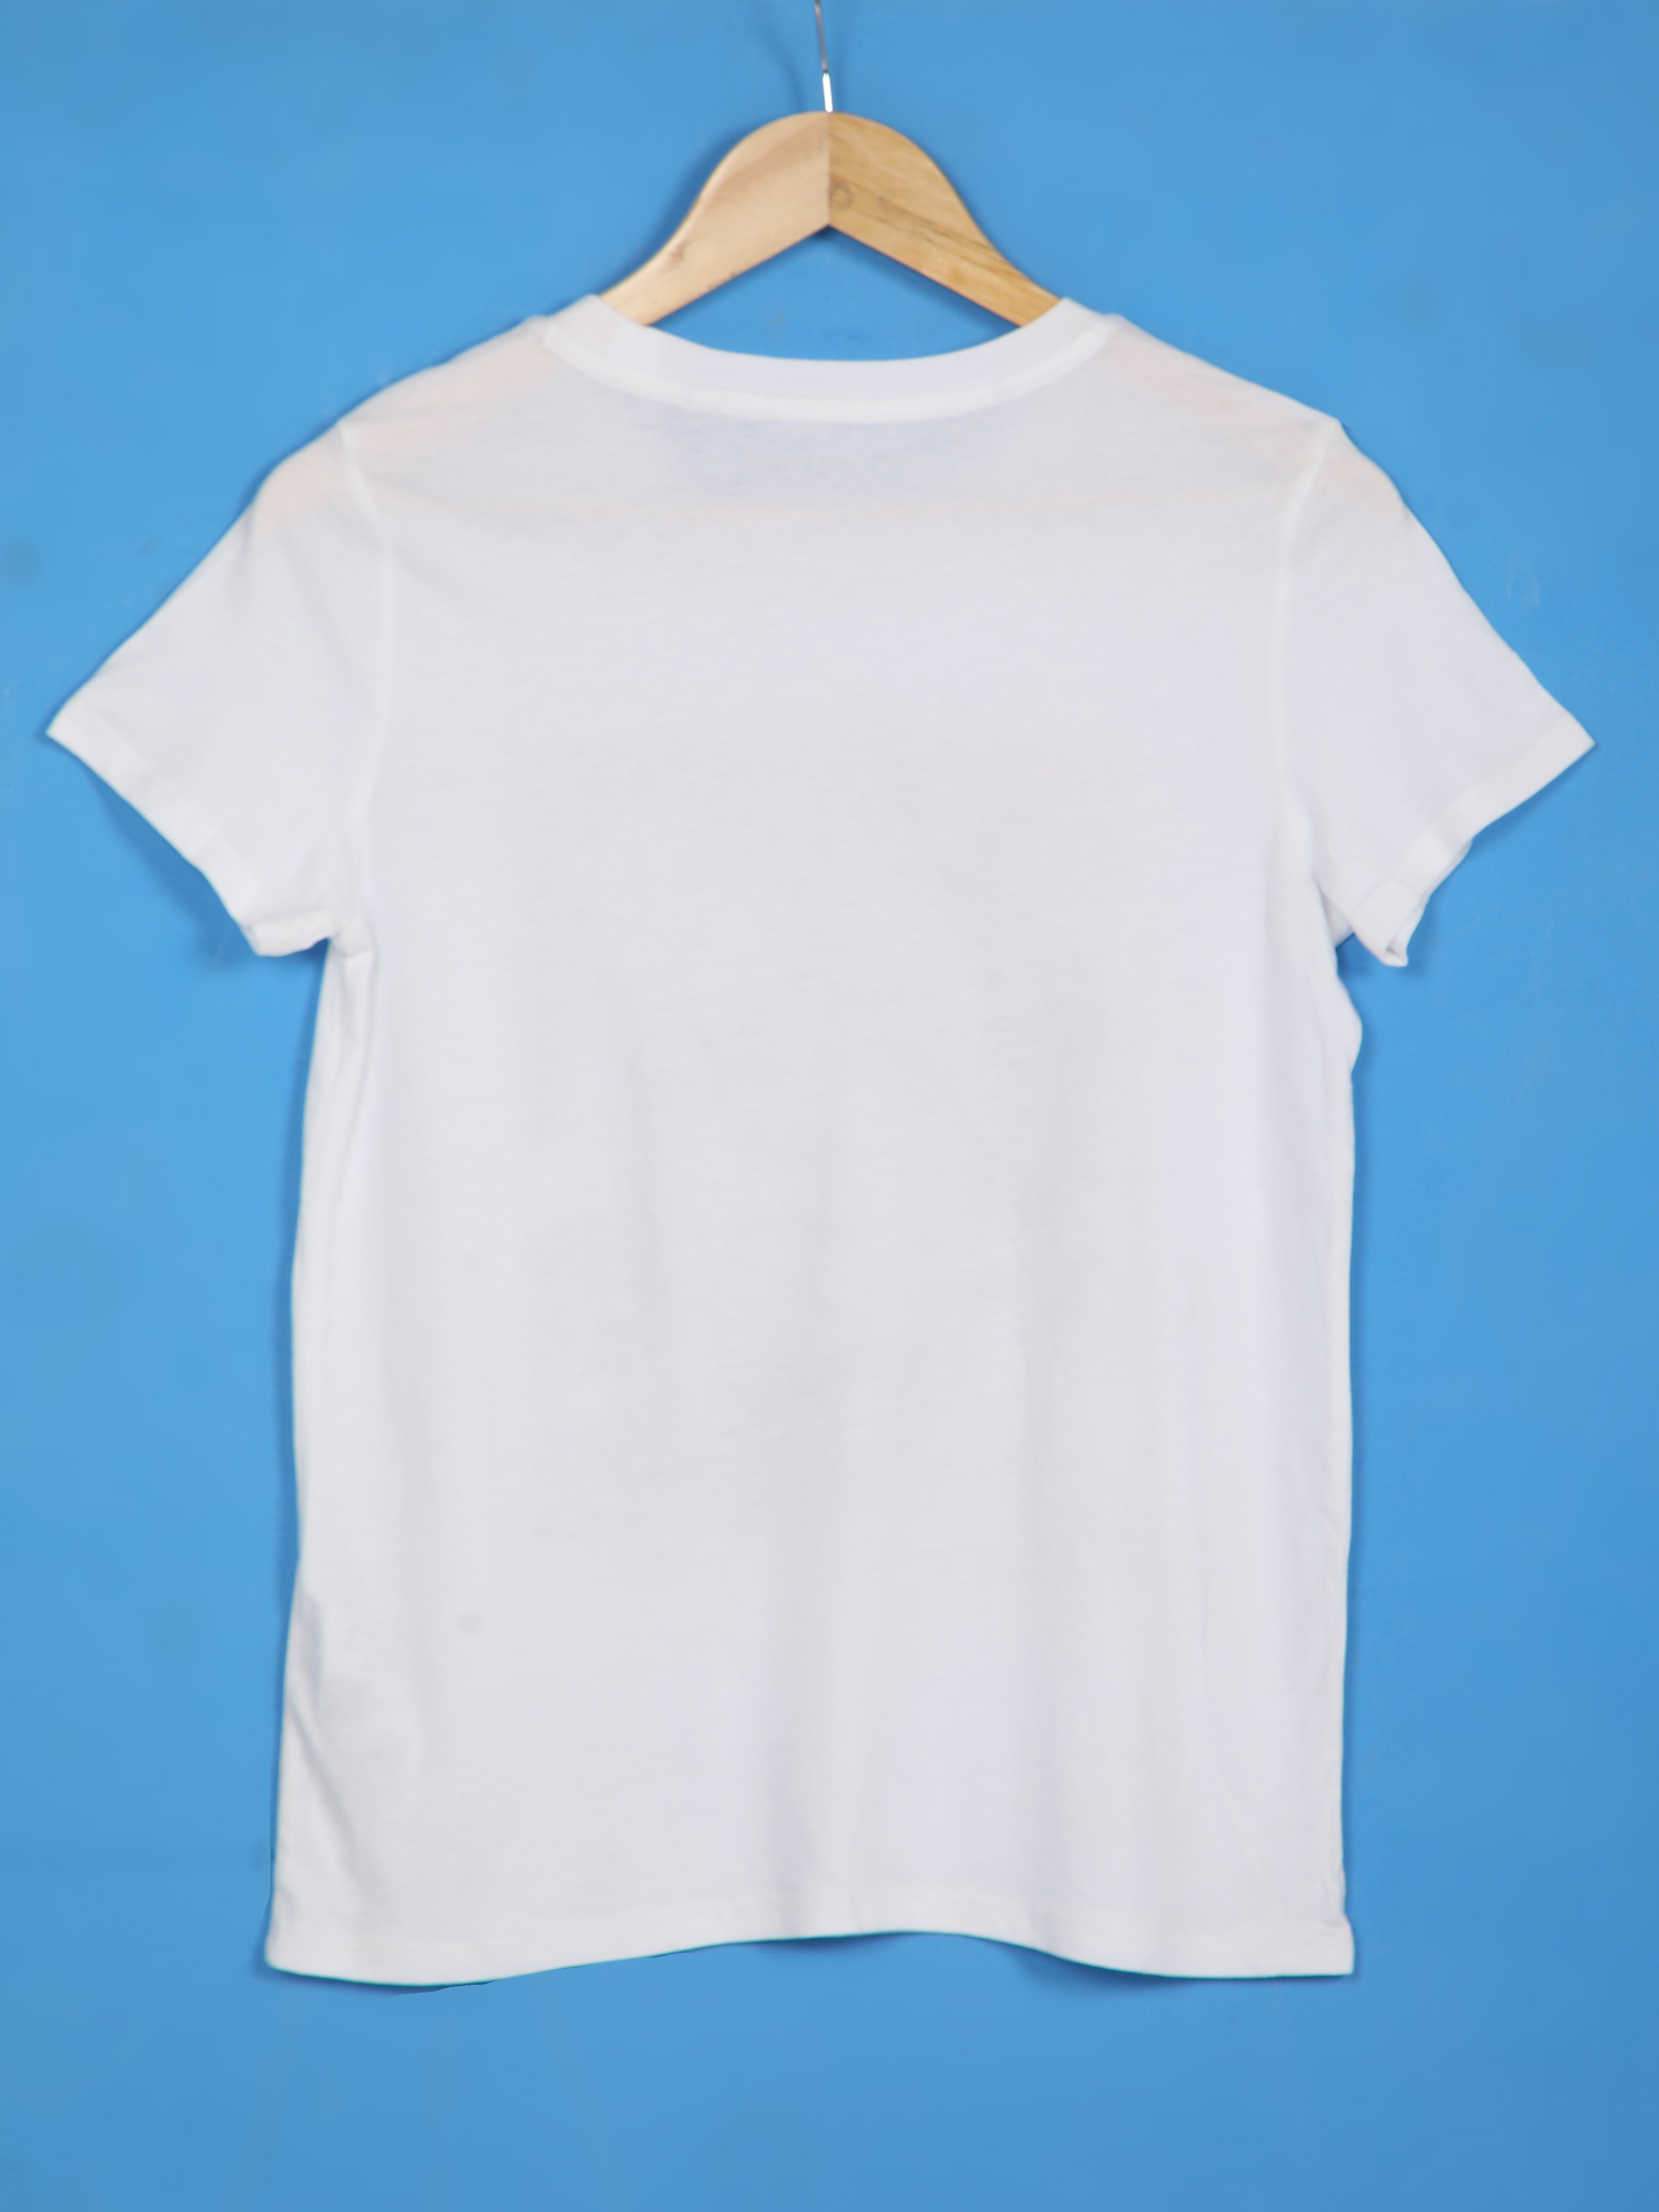 Women's Short Sleeve T-shirt-White,34